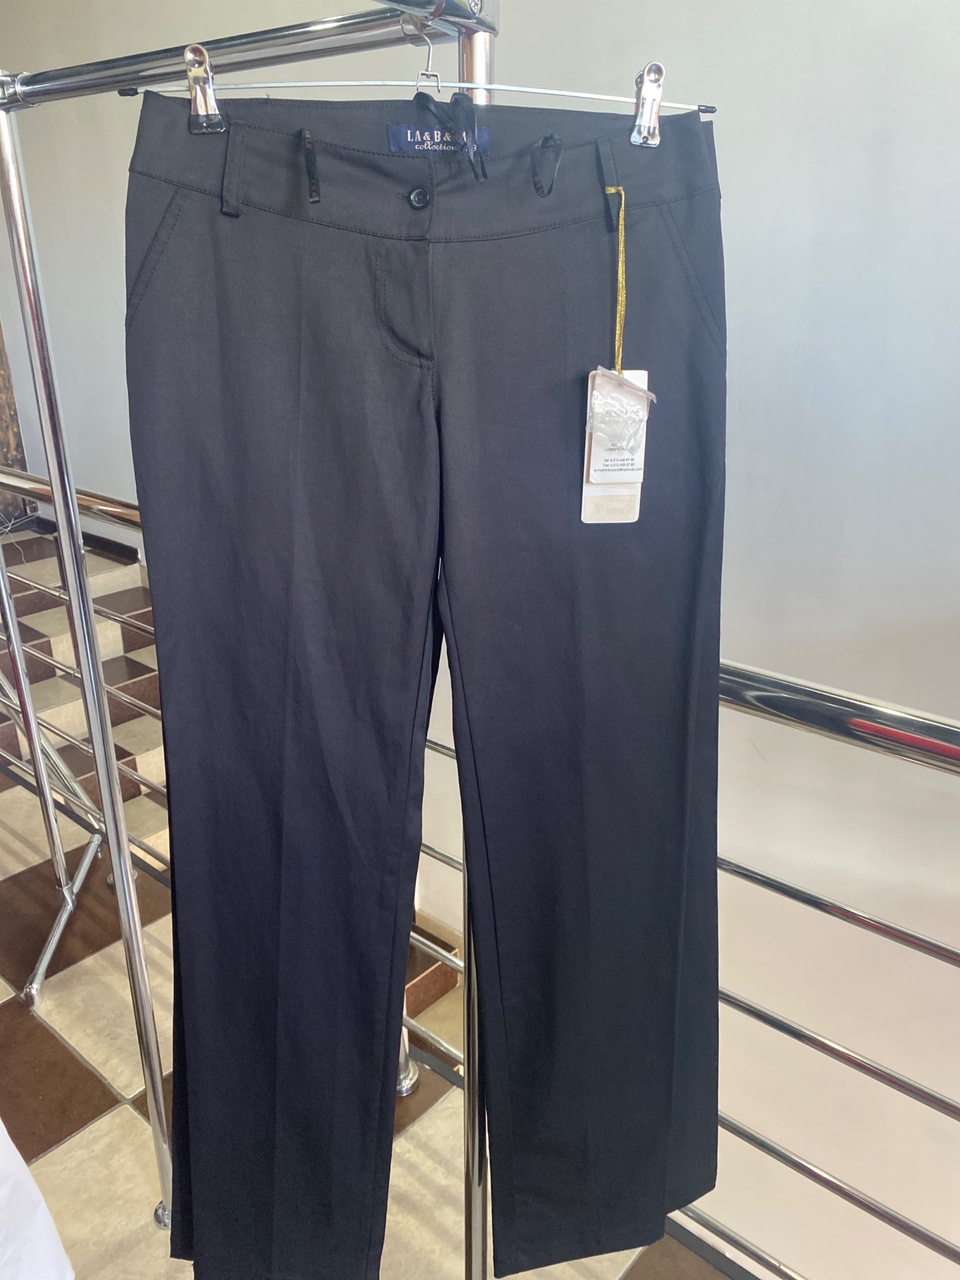 Турецкие классические брюки - 1 200 ₽, заказать онлайн.